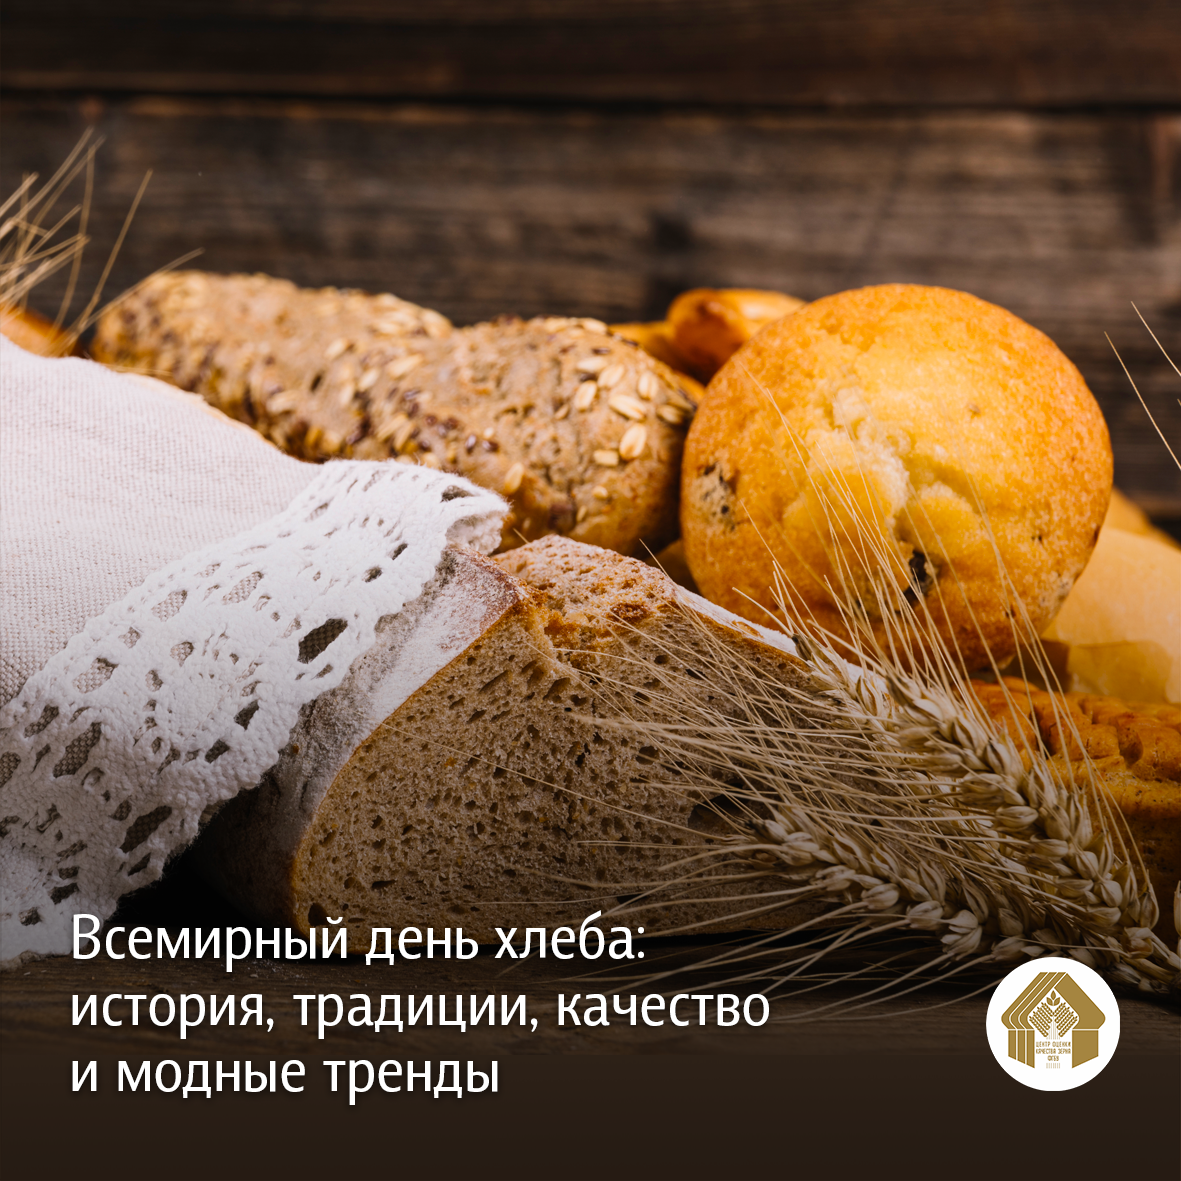 Всемирная история хлеба.